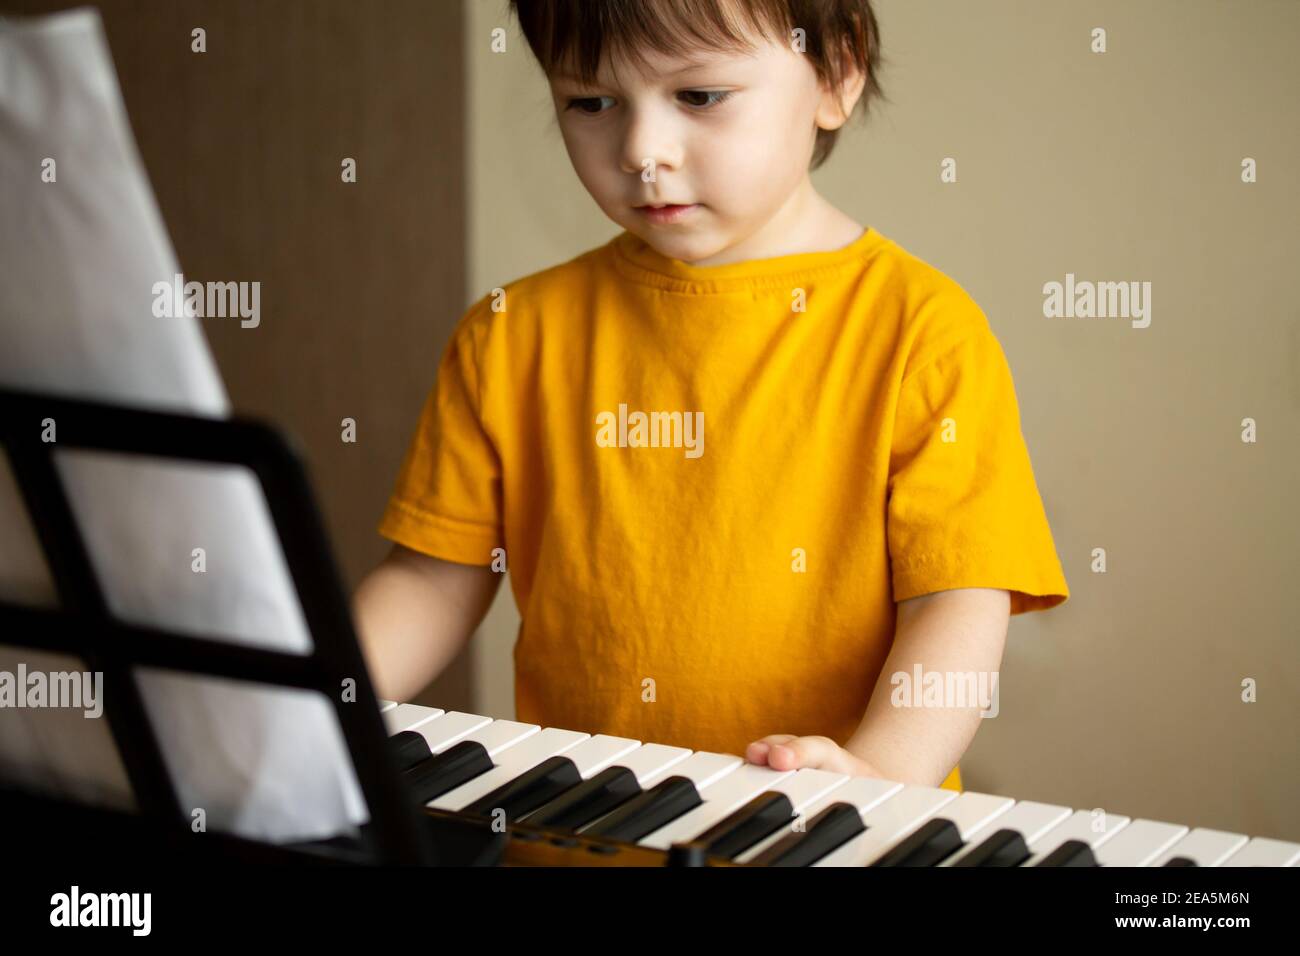 Niño Tocando El Piano De Juguete Rojo En Casa Fotografía De Stock Alamy |  sptc.edu.bd